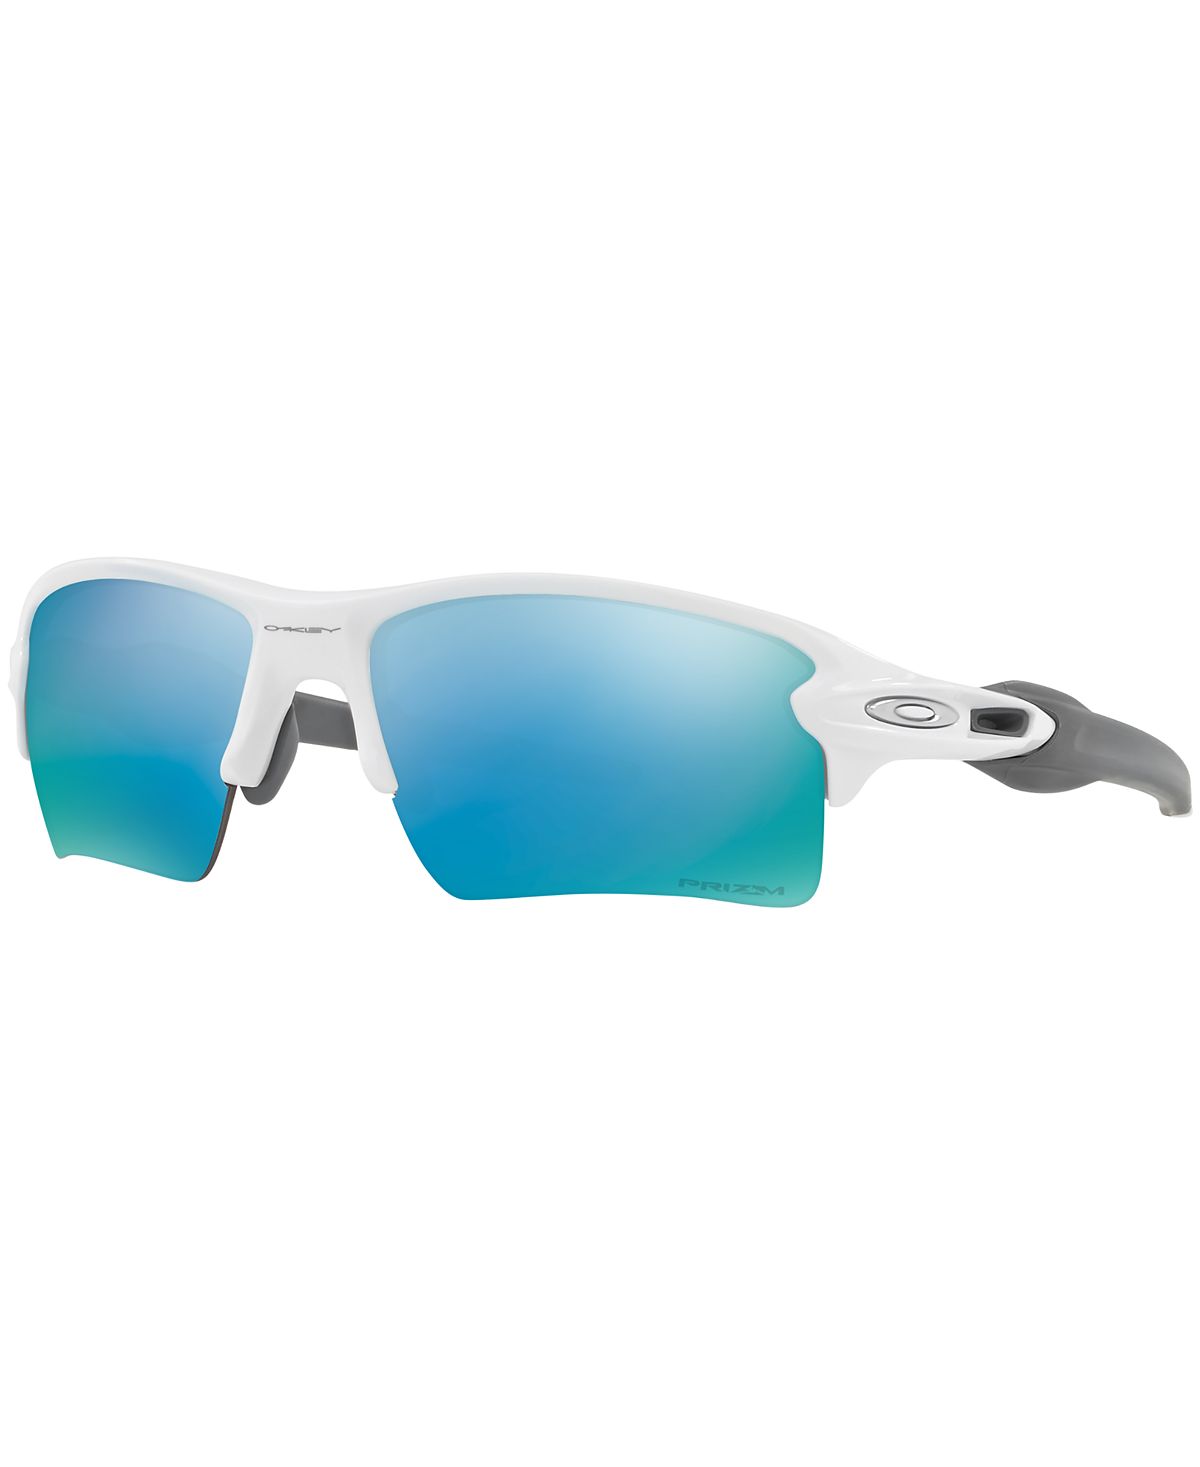 Поляризованные солнцезащитные очки XL Prizm, OO9188 Flak 2.0, зеркальные Oakley